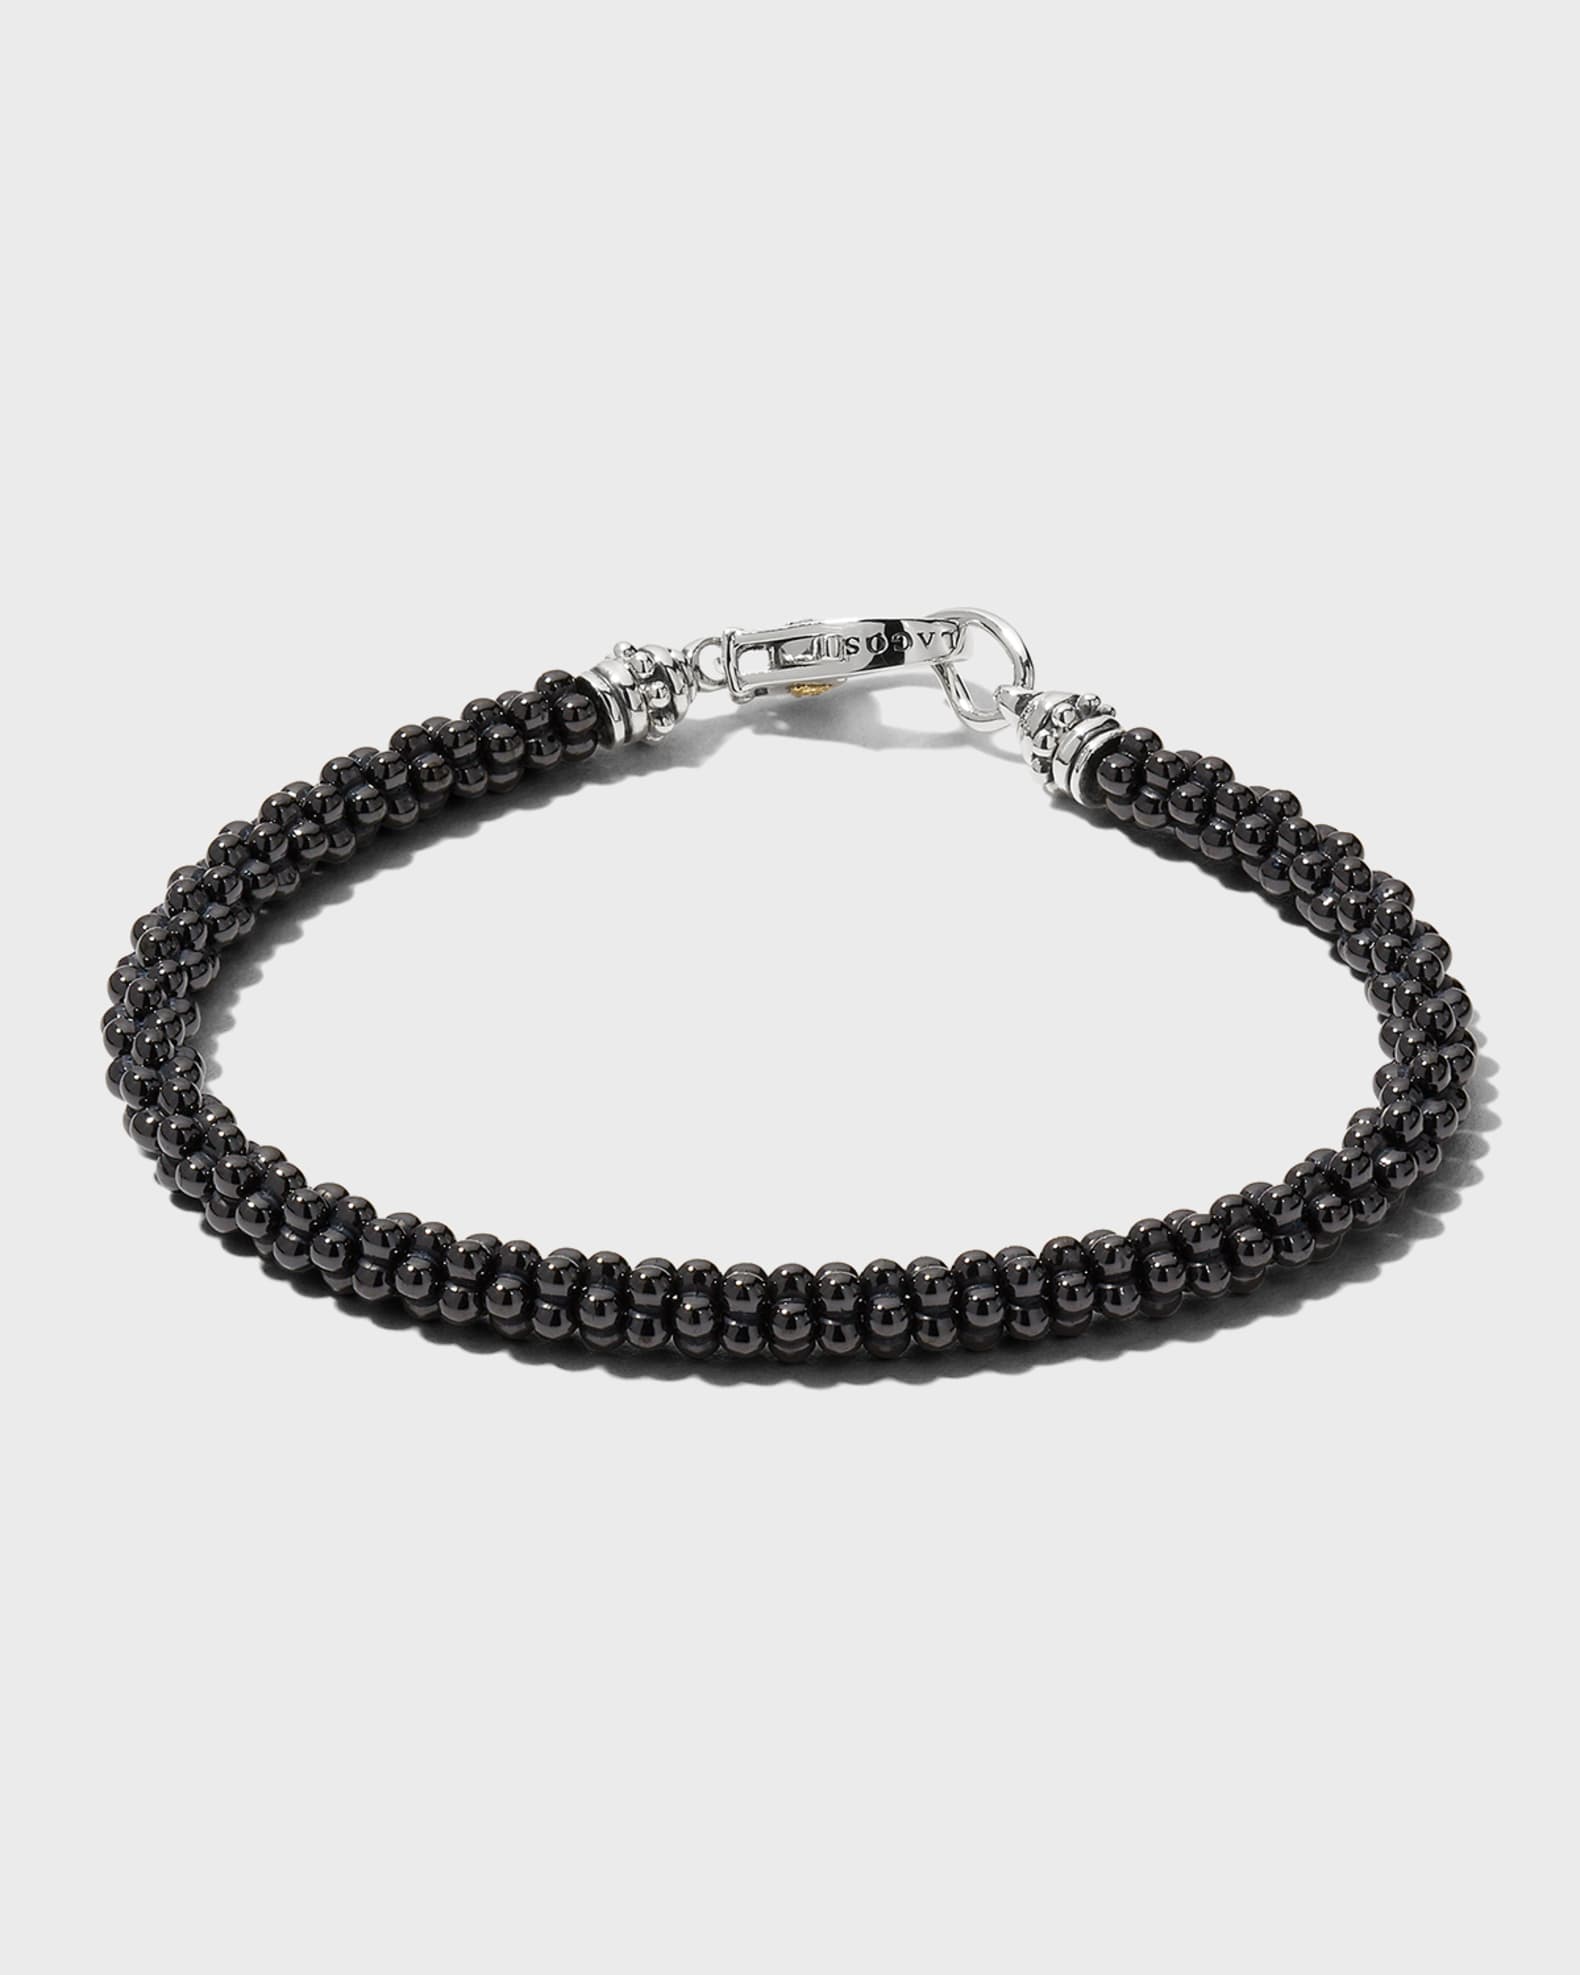 LAGOS Ceramic Black Caviar Beaded Bracelet, Size Medium | Neiman Marcus